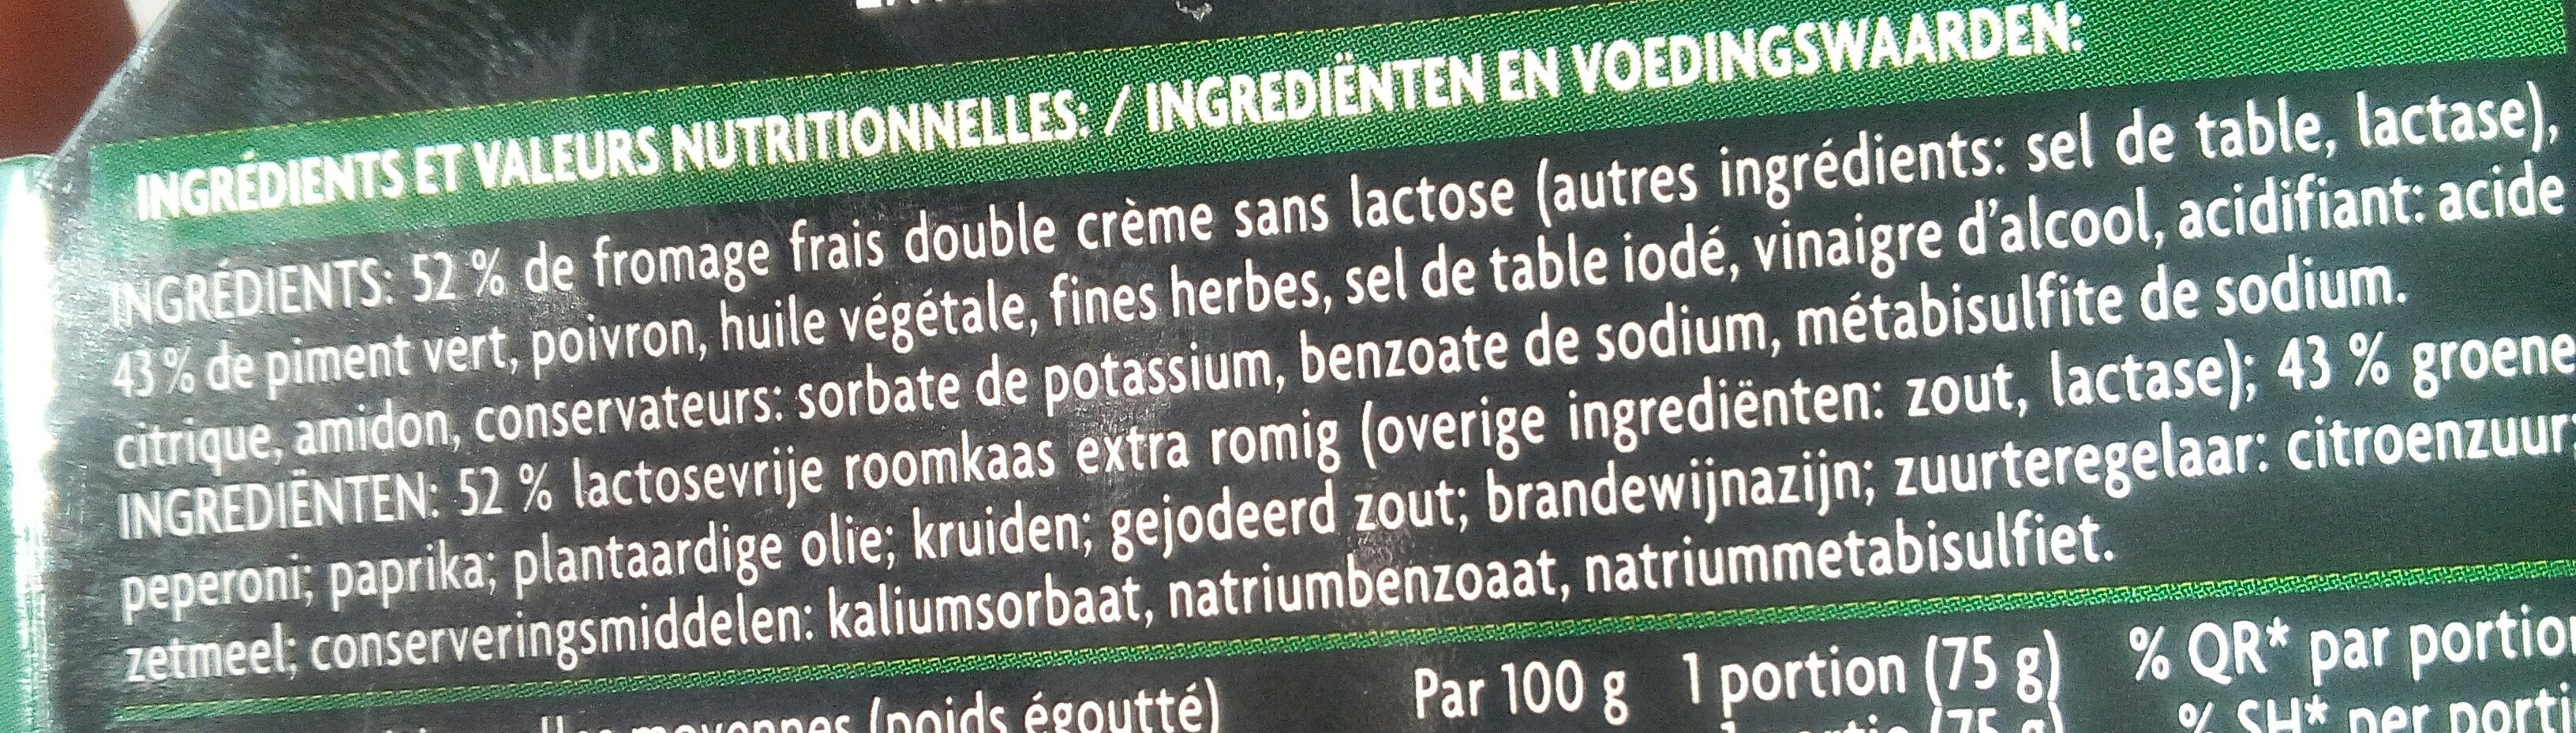 Kappa antipasti Piments verts farcis au fromage frais double crème - Ingrédients